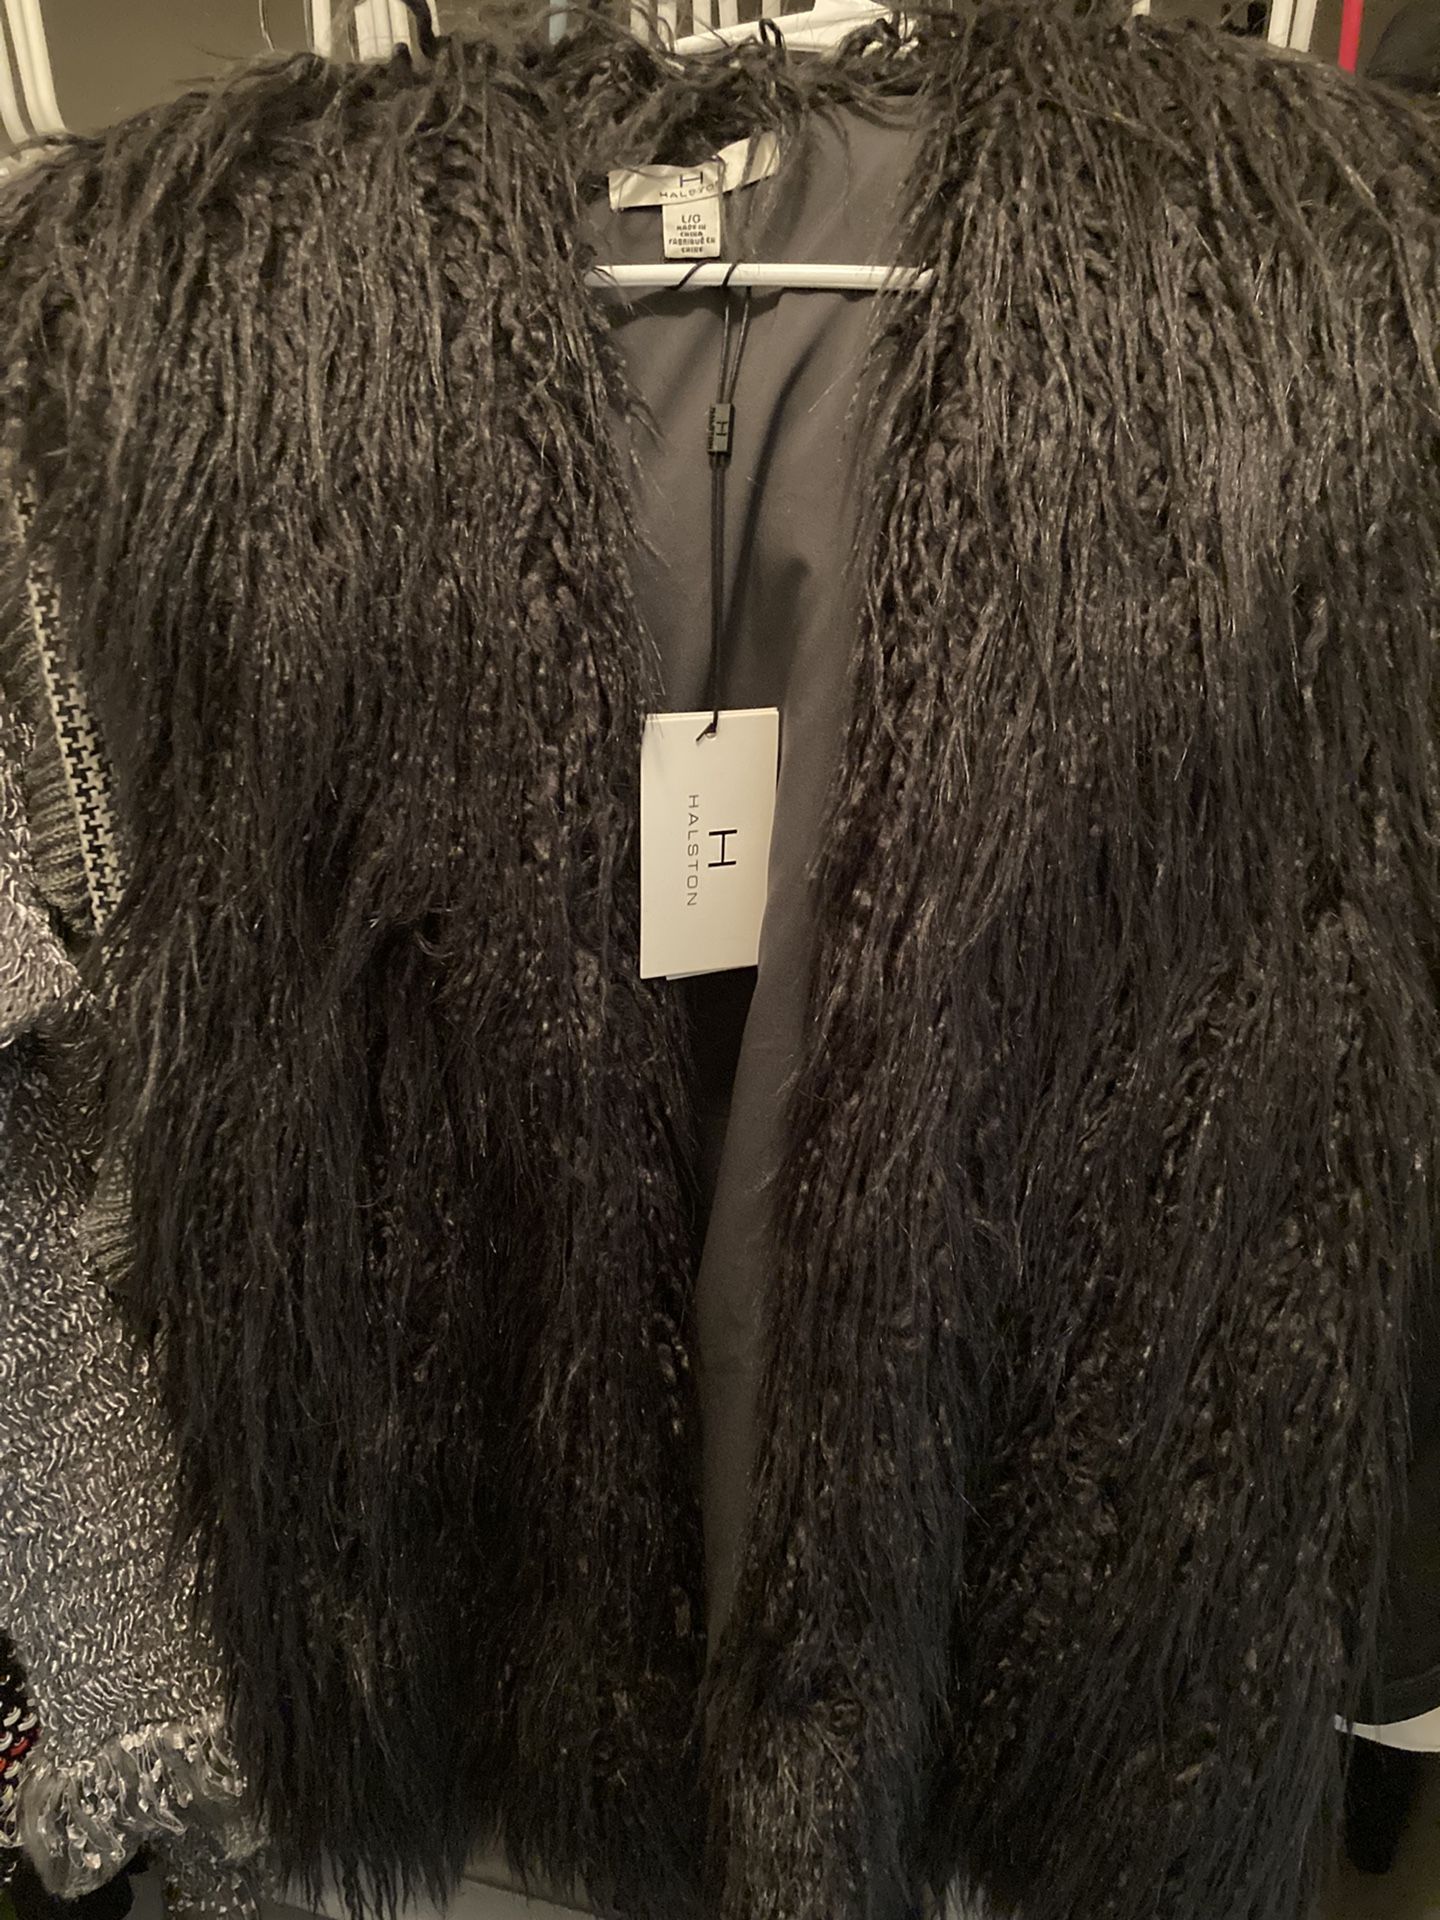 Women’s Size Lg Halston Faux Fur Vest(New) Tags